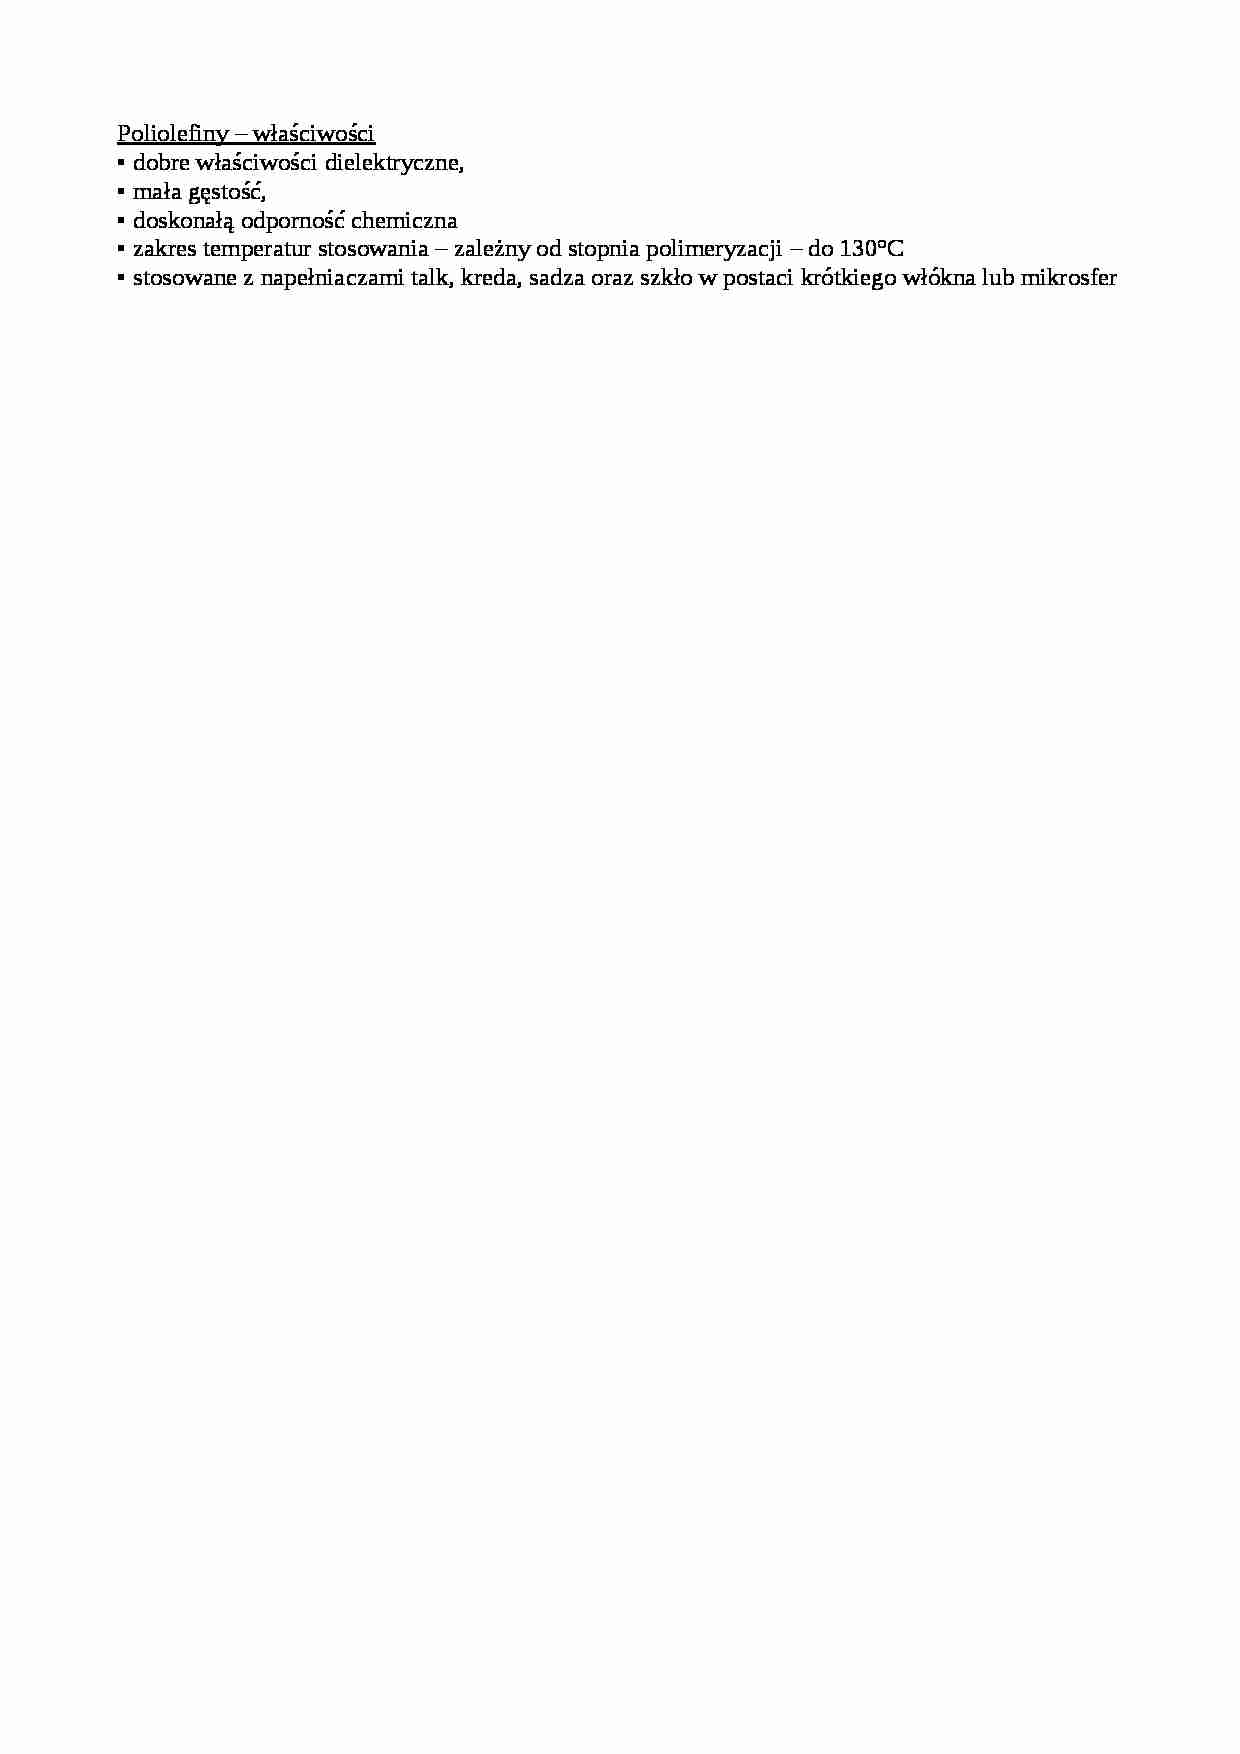 Poliolefiny – właściwości - strona 1